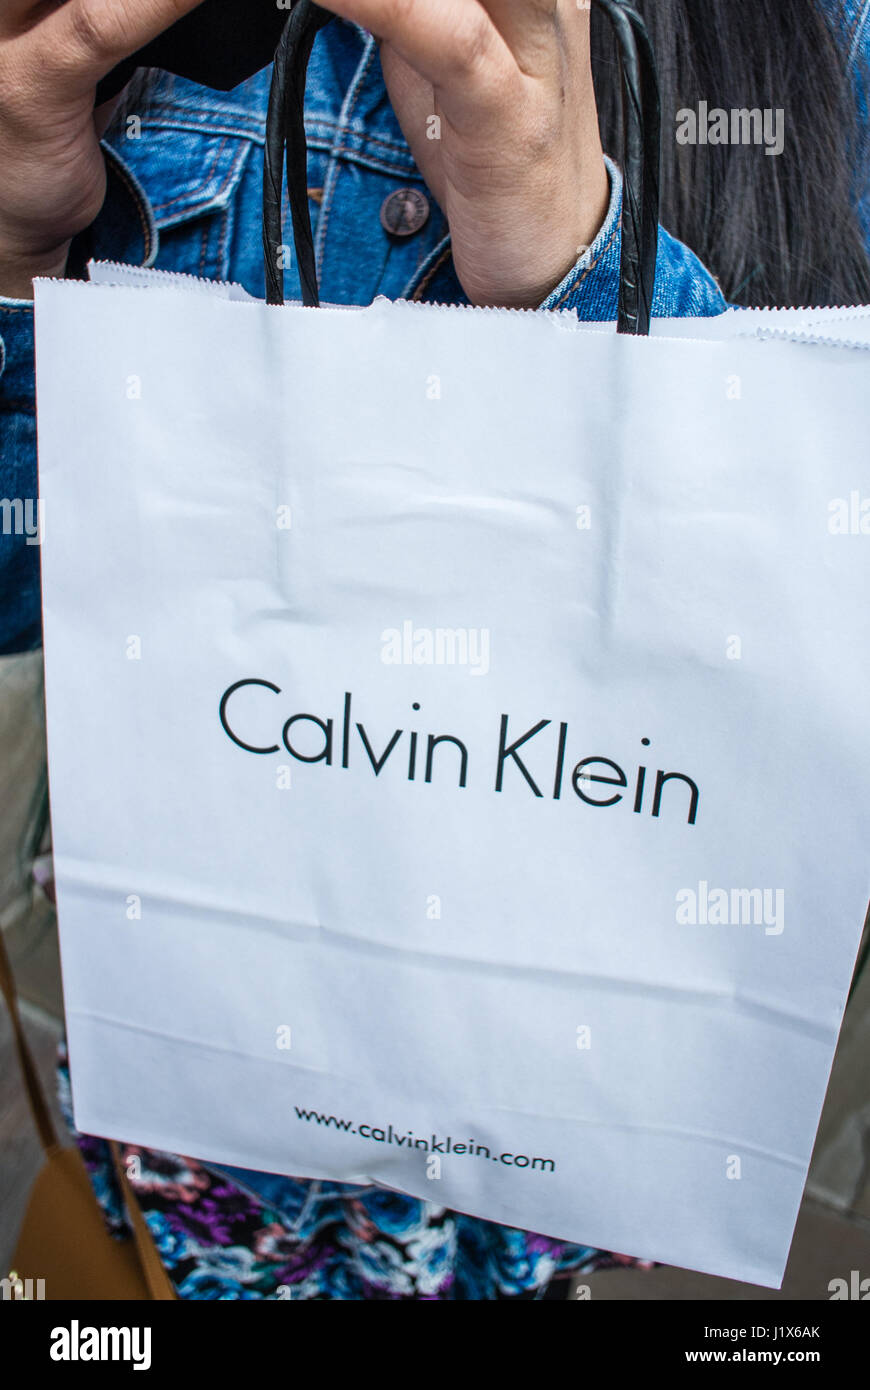 Calvin Klein shopping bag Stock Photo - Alamy